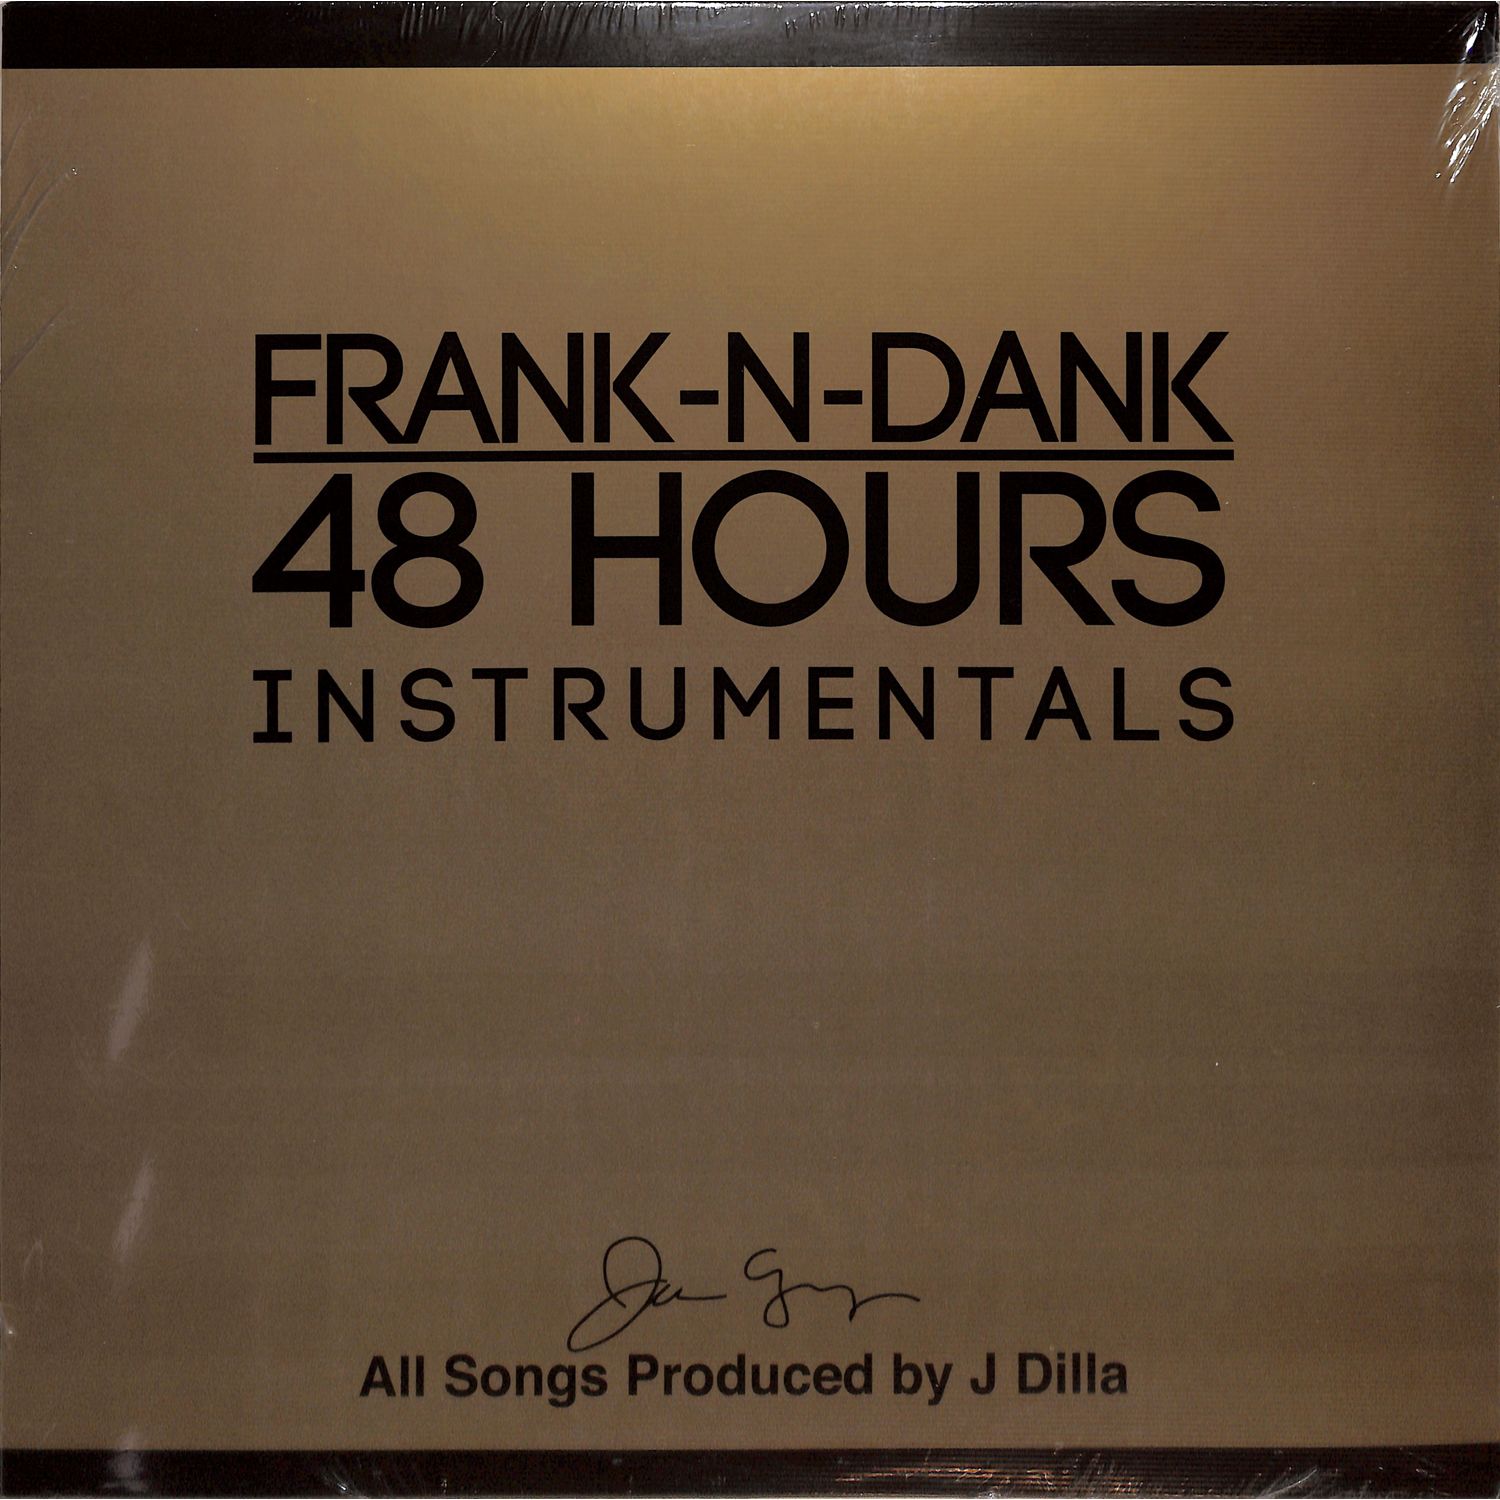 Frank-N-Dank - 48 HOURS 